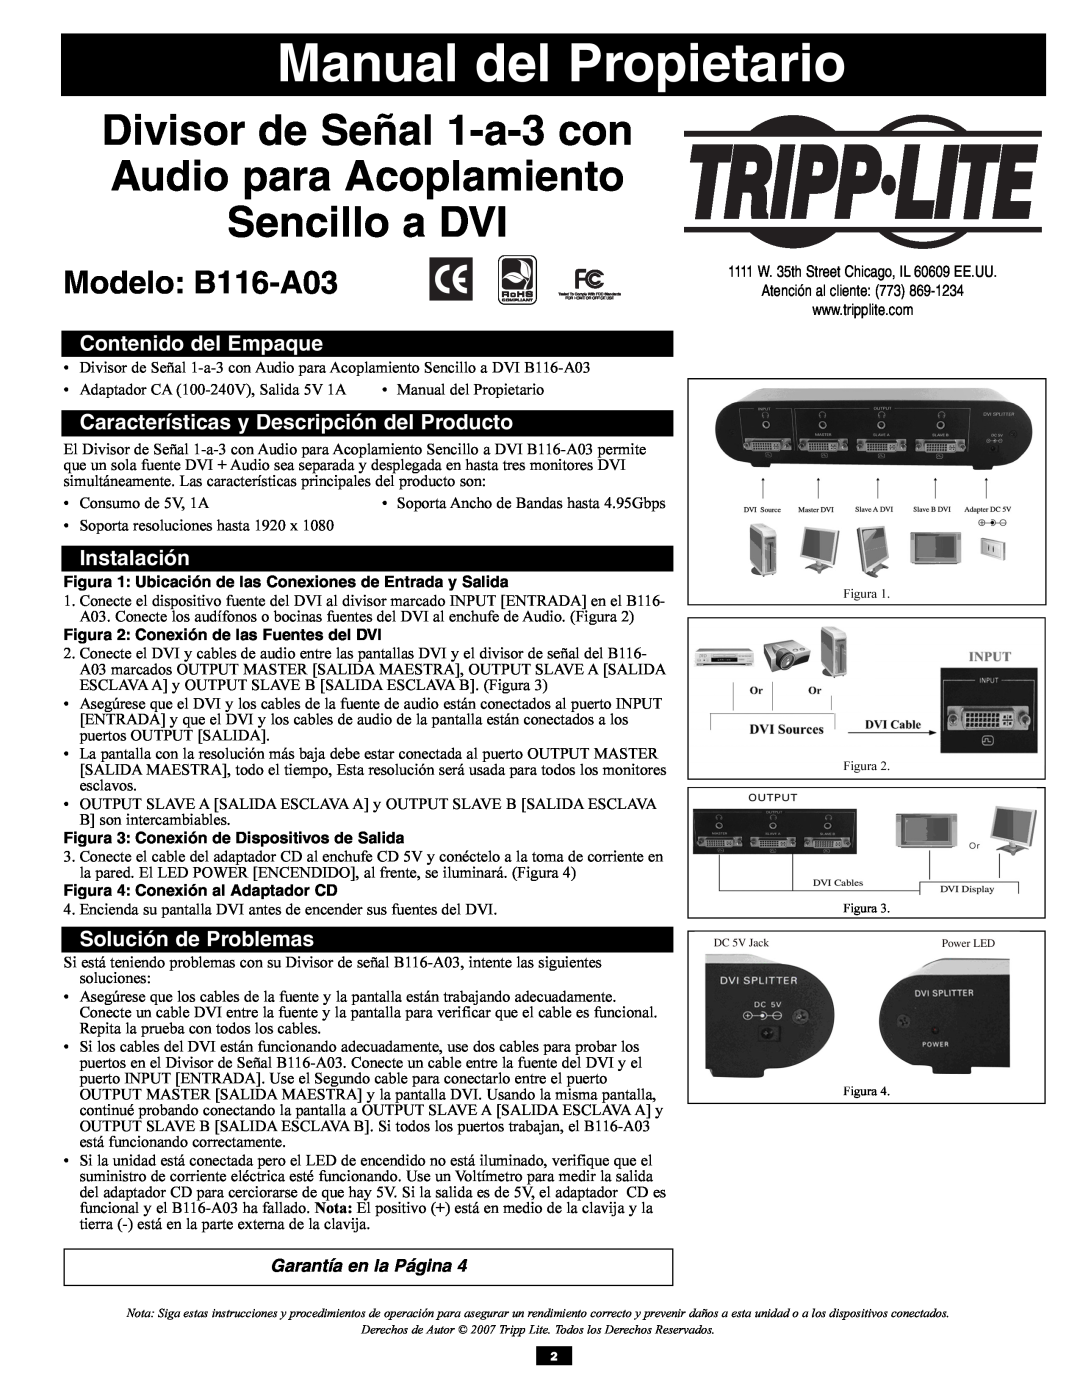 Tripp Lite B116-A03 Manual del Propietario, Divisor de Señal 1-a-3 con Audio para Acoplamiento Sencillo a DVI, Instalación 